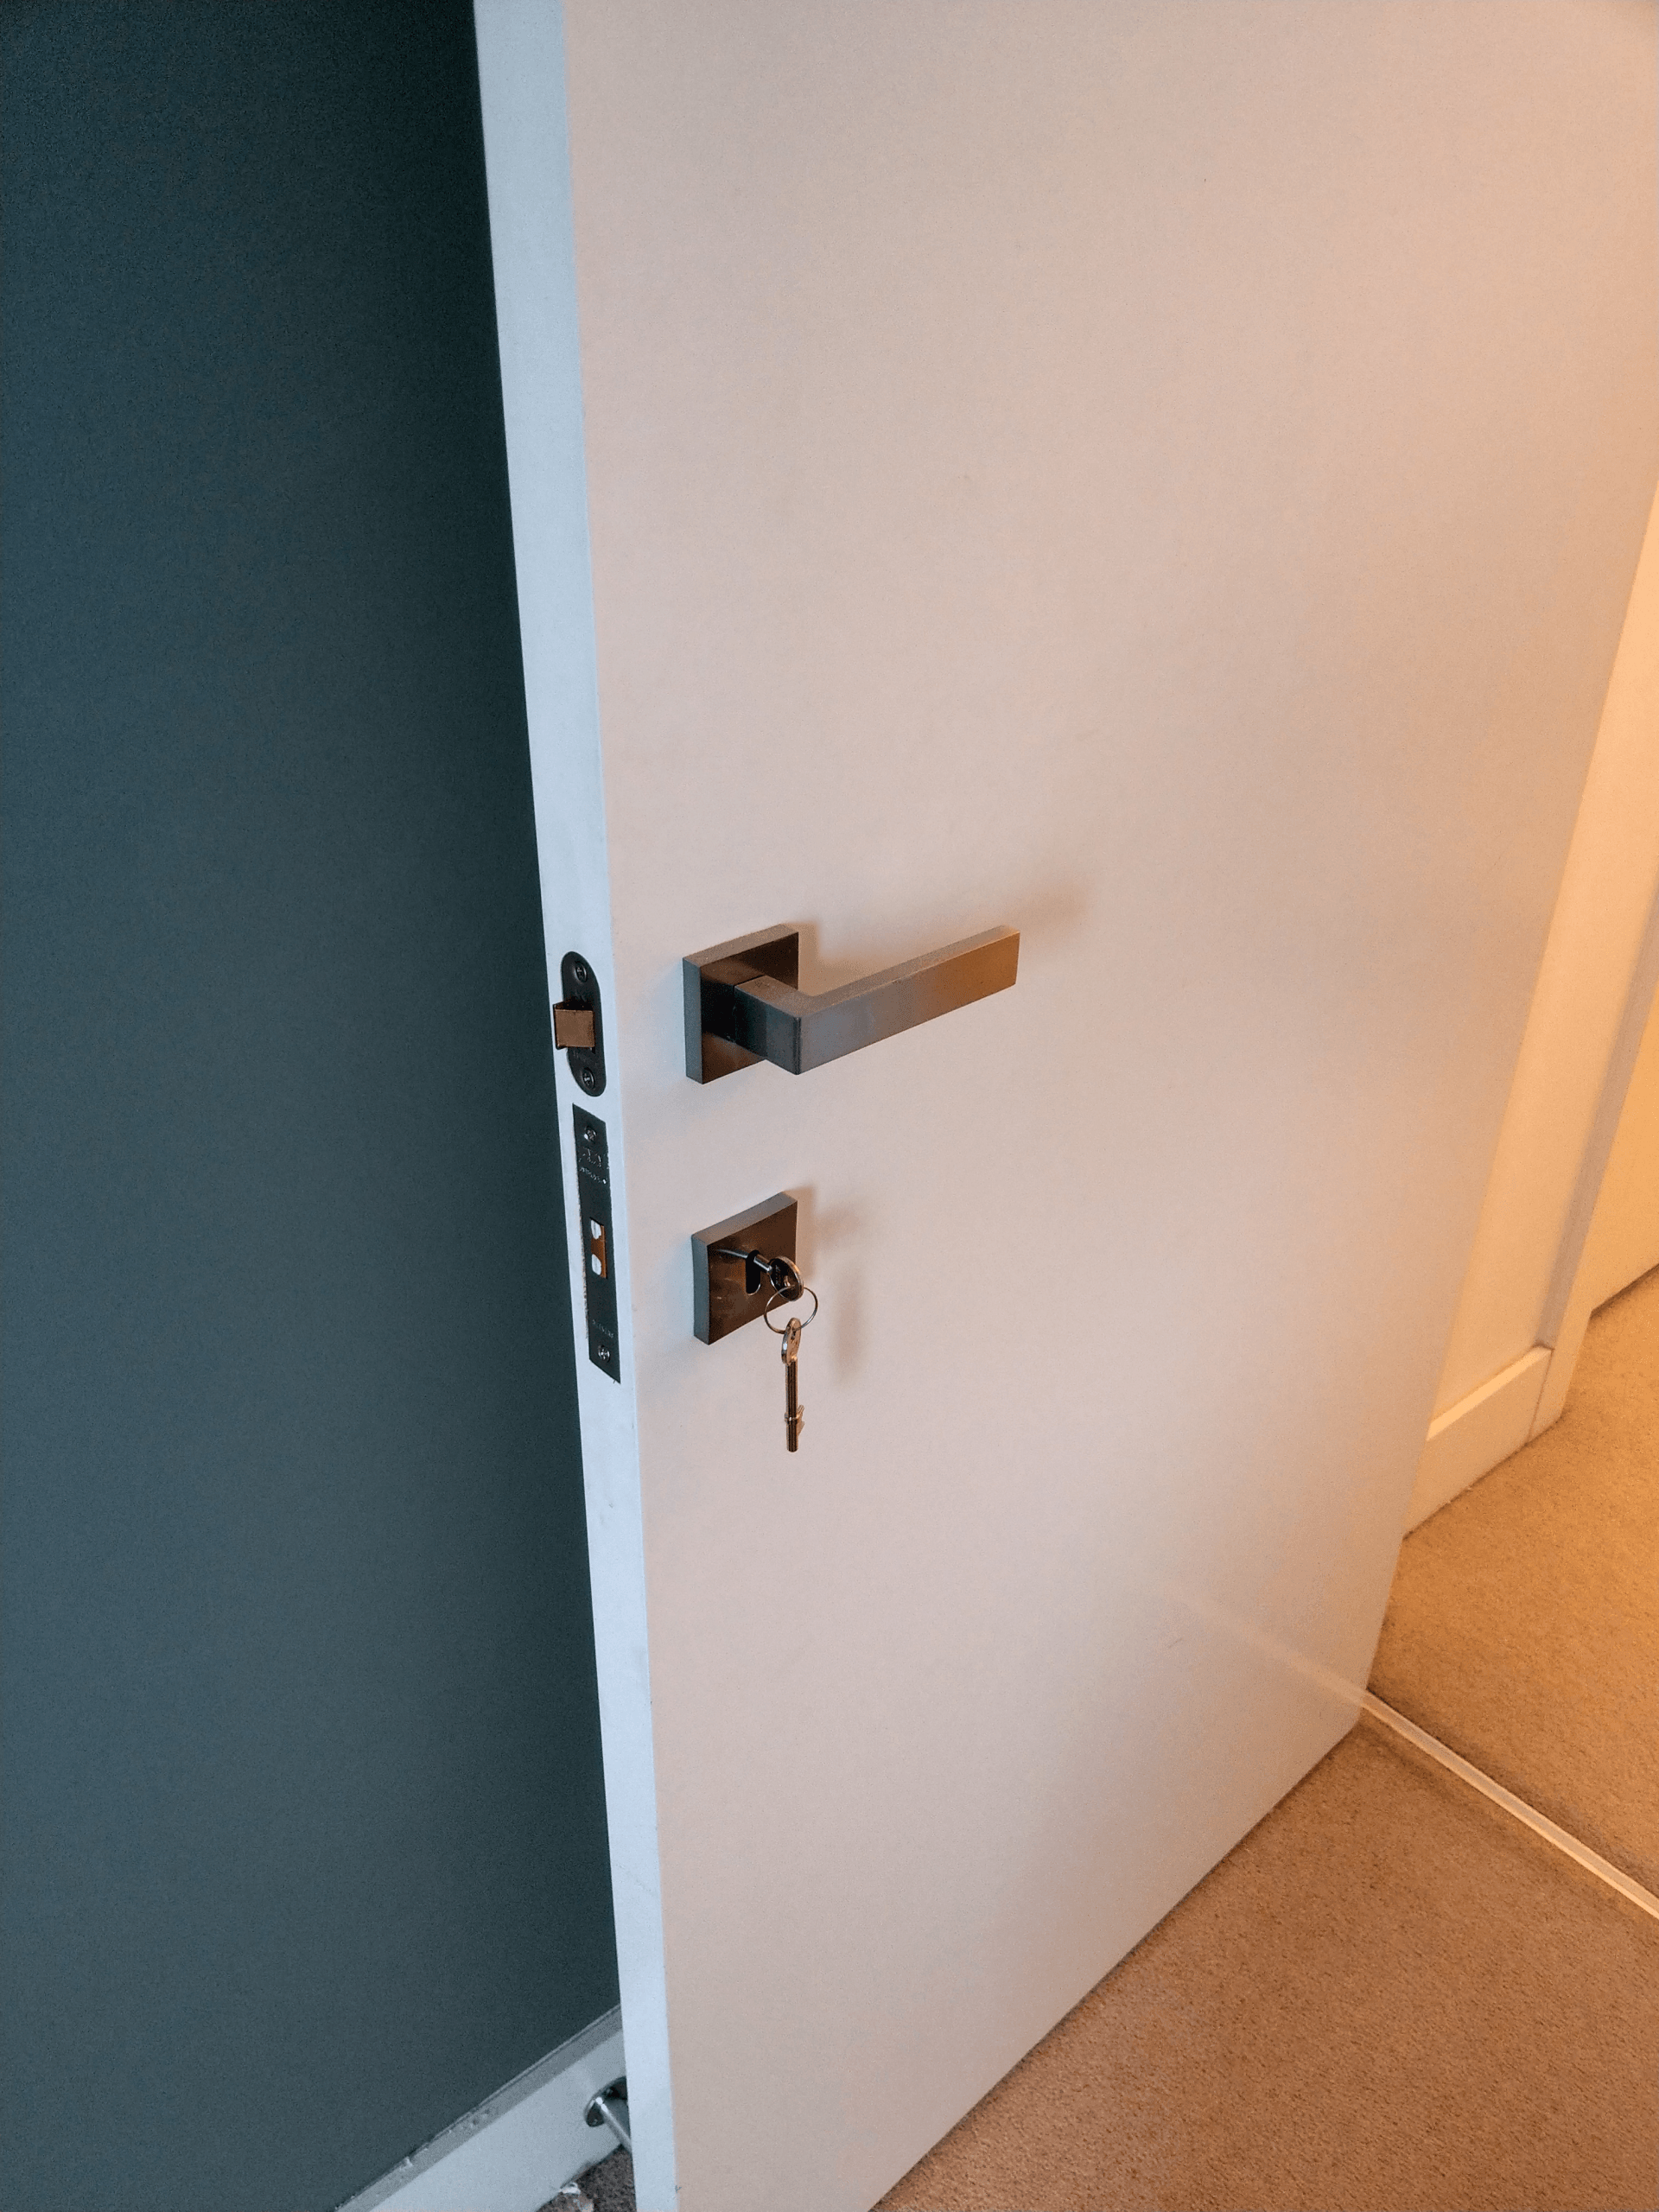 Bedroom door locks